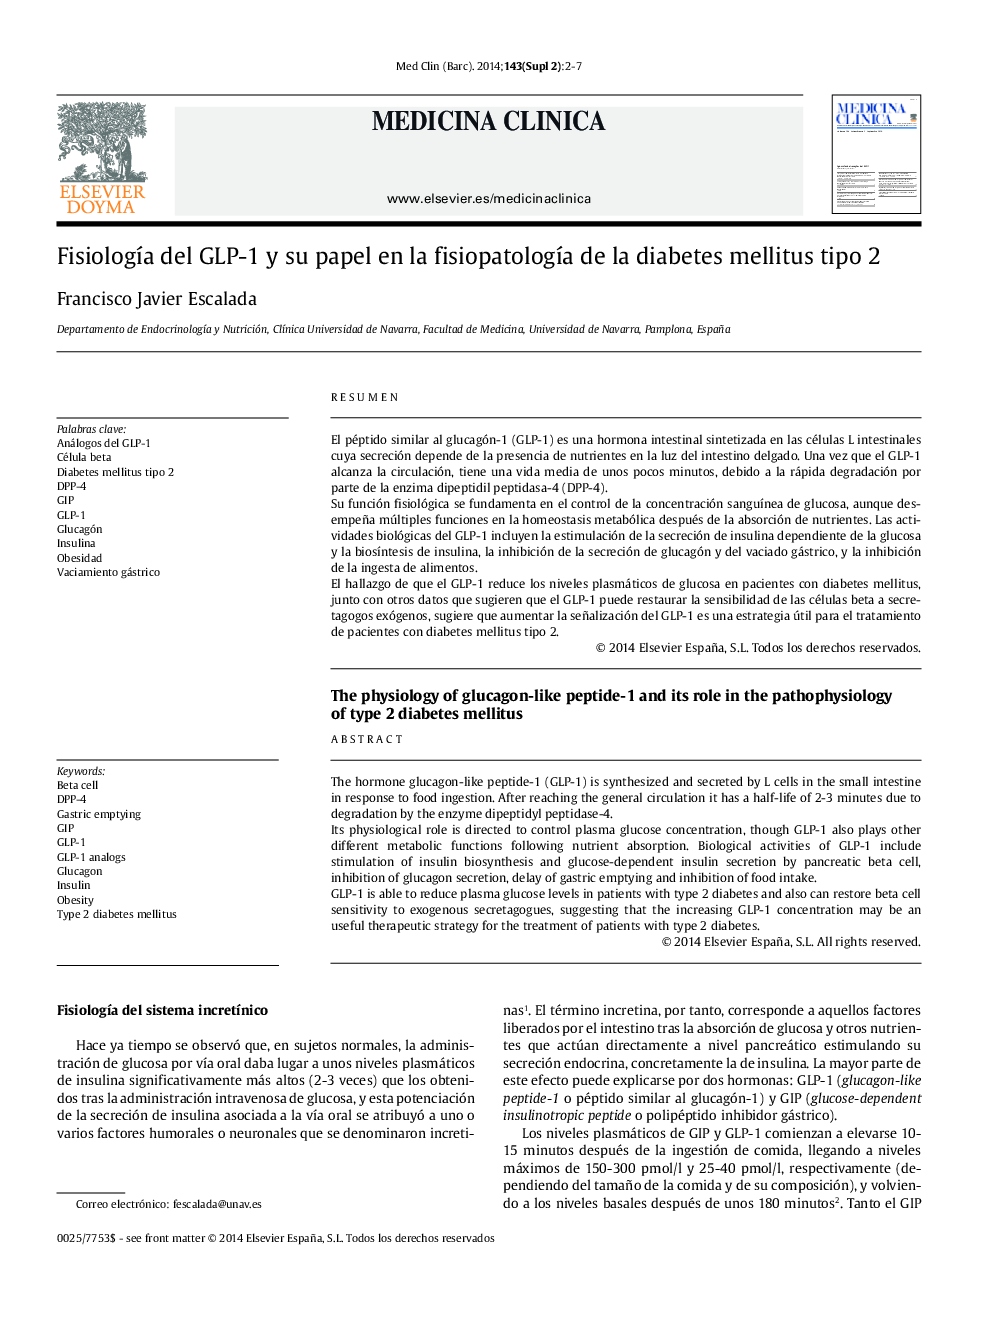 دیابت نوع 2 فیزیولوژی پپتید 1-گلوکاگون و نقش آن در پاتوفیزیولوژی دیابت نوع 2 